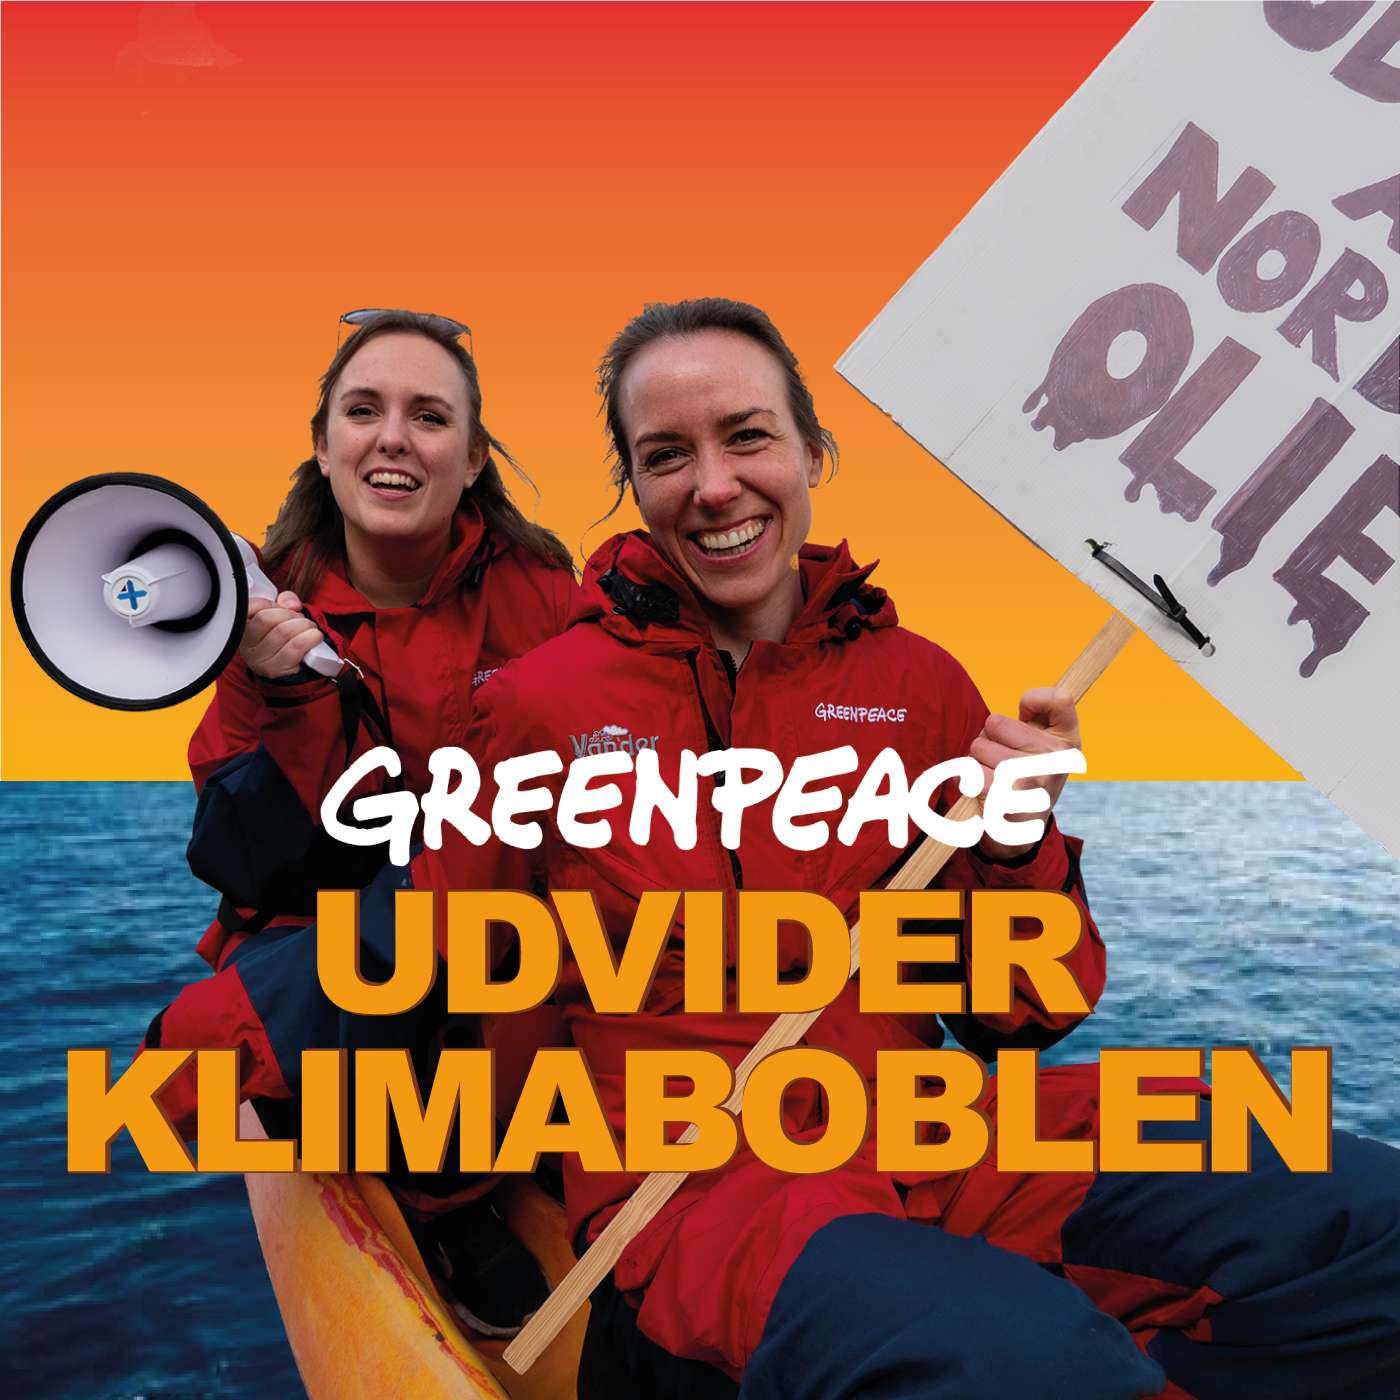 Podcast Greenpeace udvider klimaboblen Greenpeace Danmark